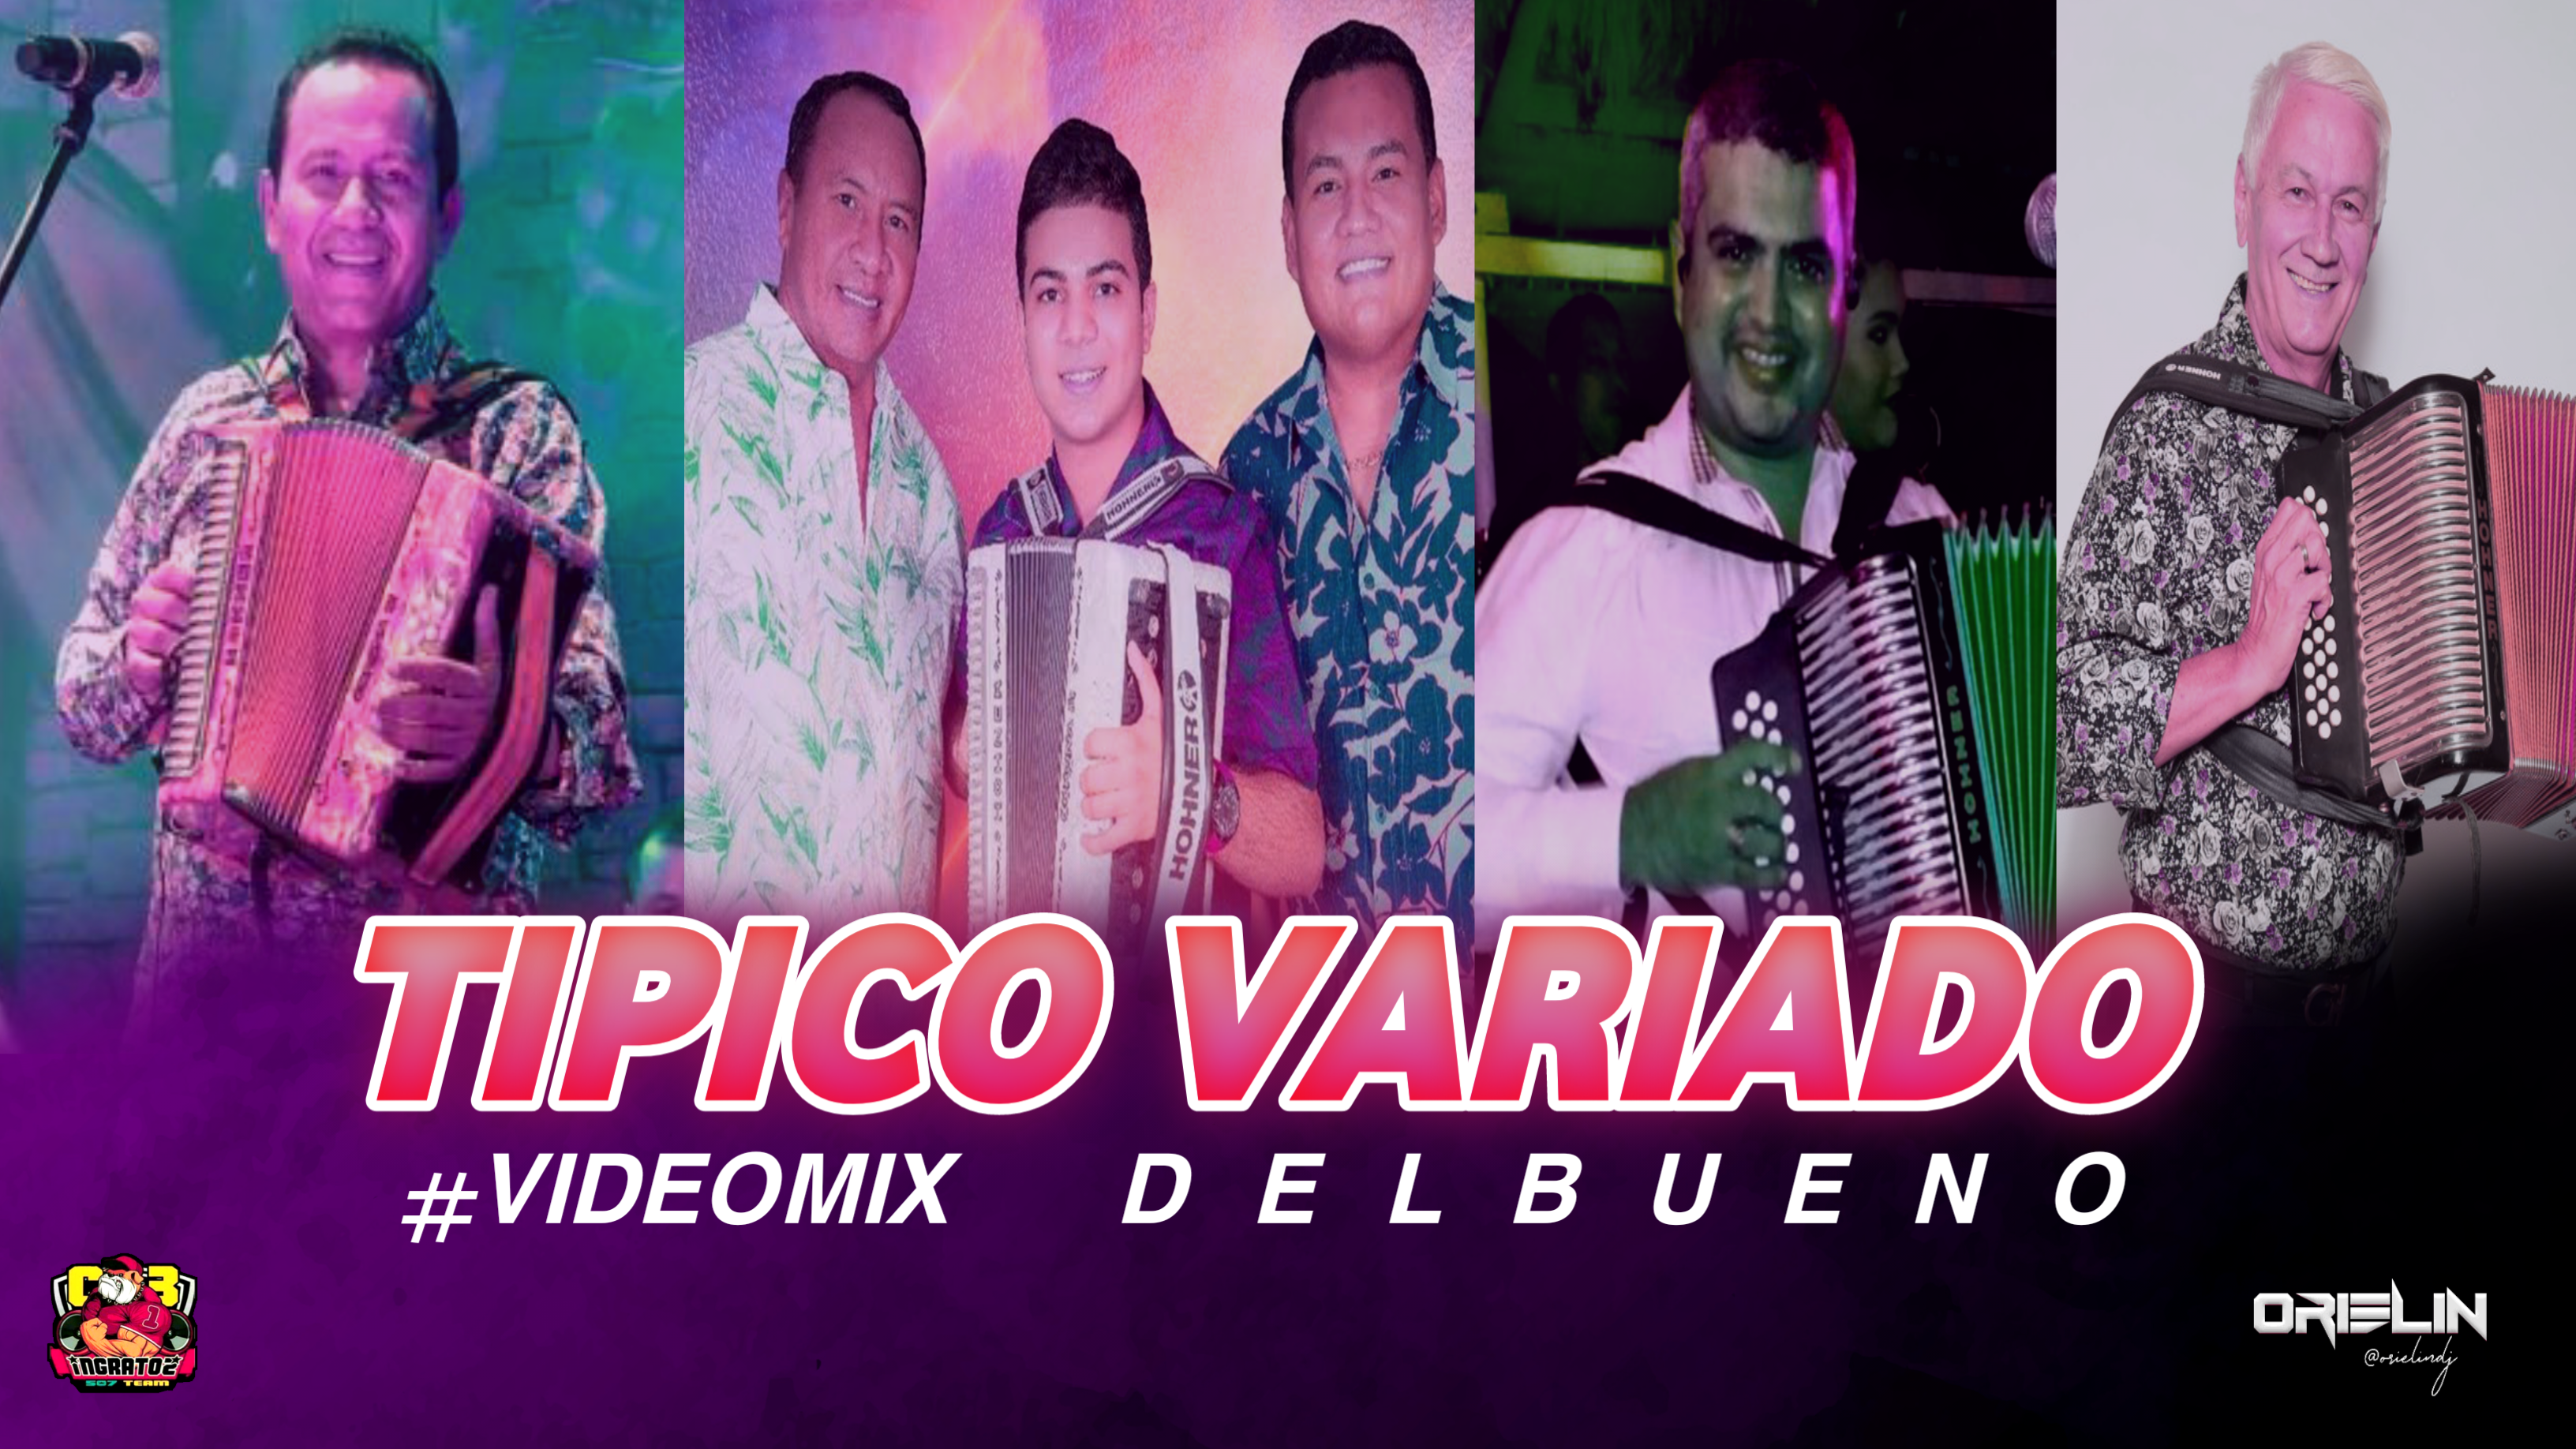 Dj Orielin - Tipico Mix Variado (Del Bueno)